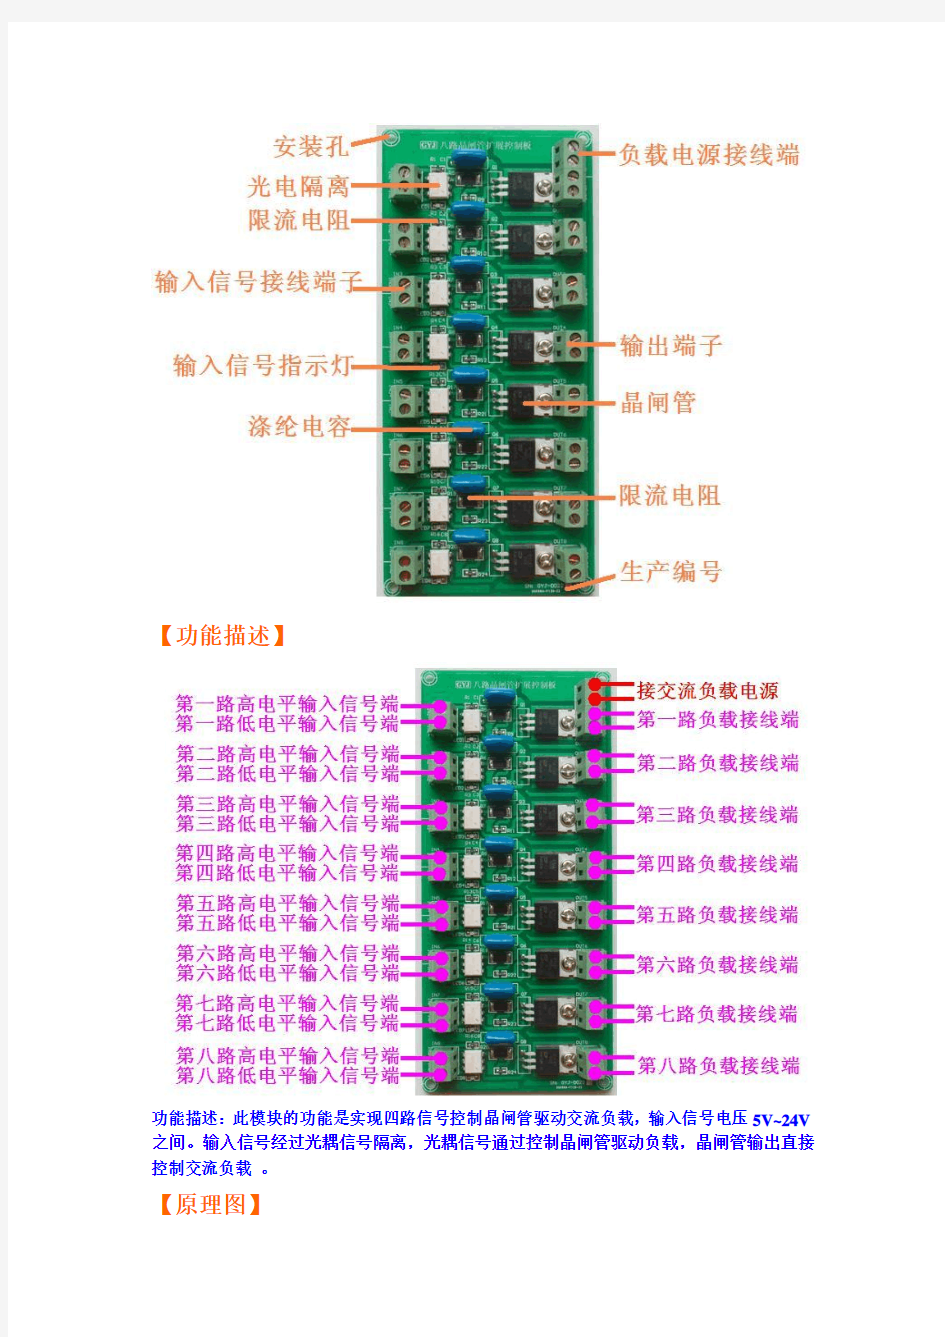 八路晶闸管扩展控制板产品使用手册原理图及PCB图